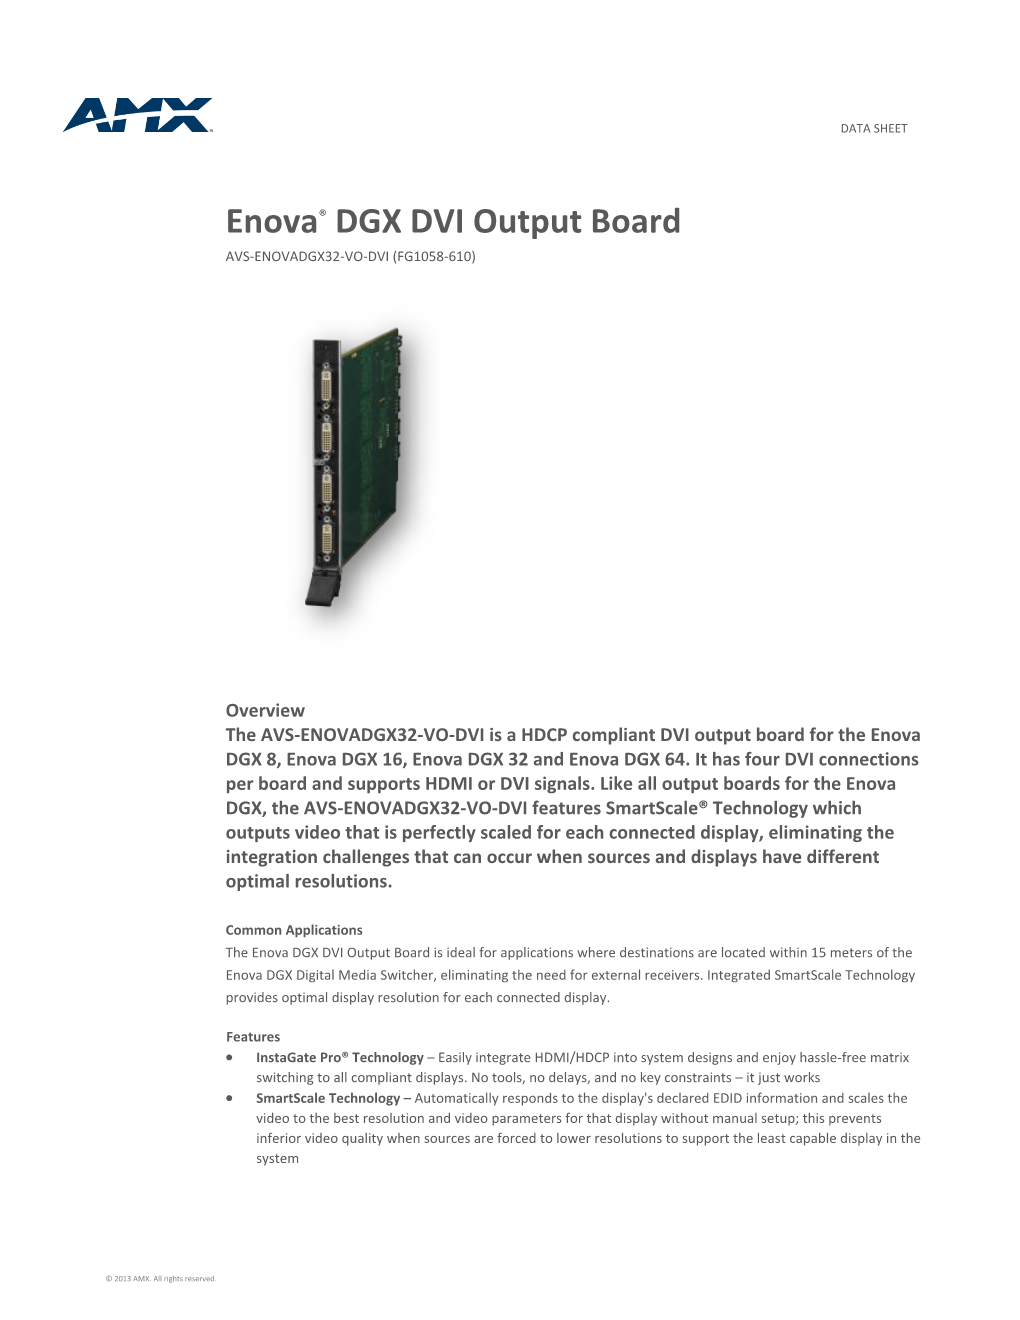 Enova® DGX DVI Output Board AVS-ENOVADGX32-VO-DVI (FG1058-610)